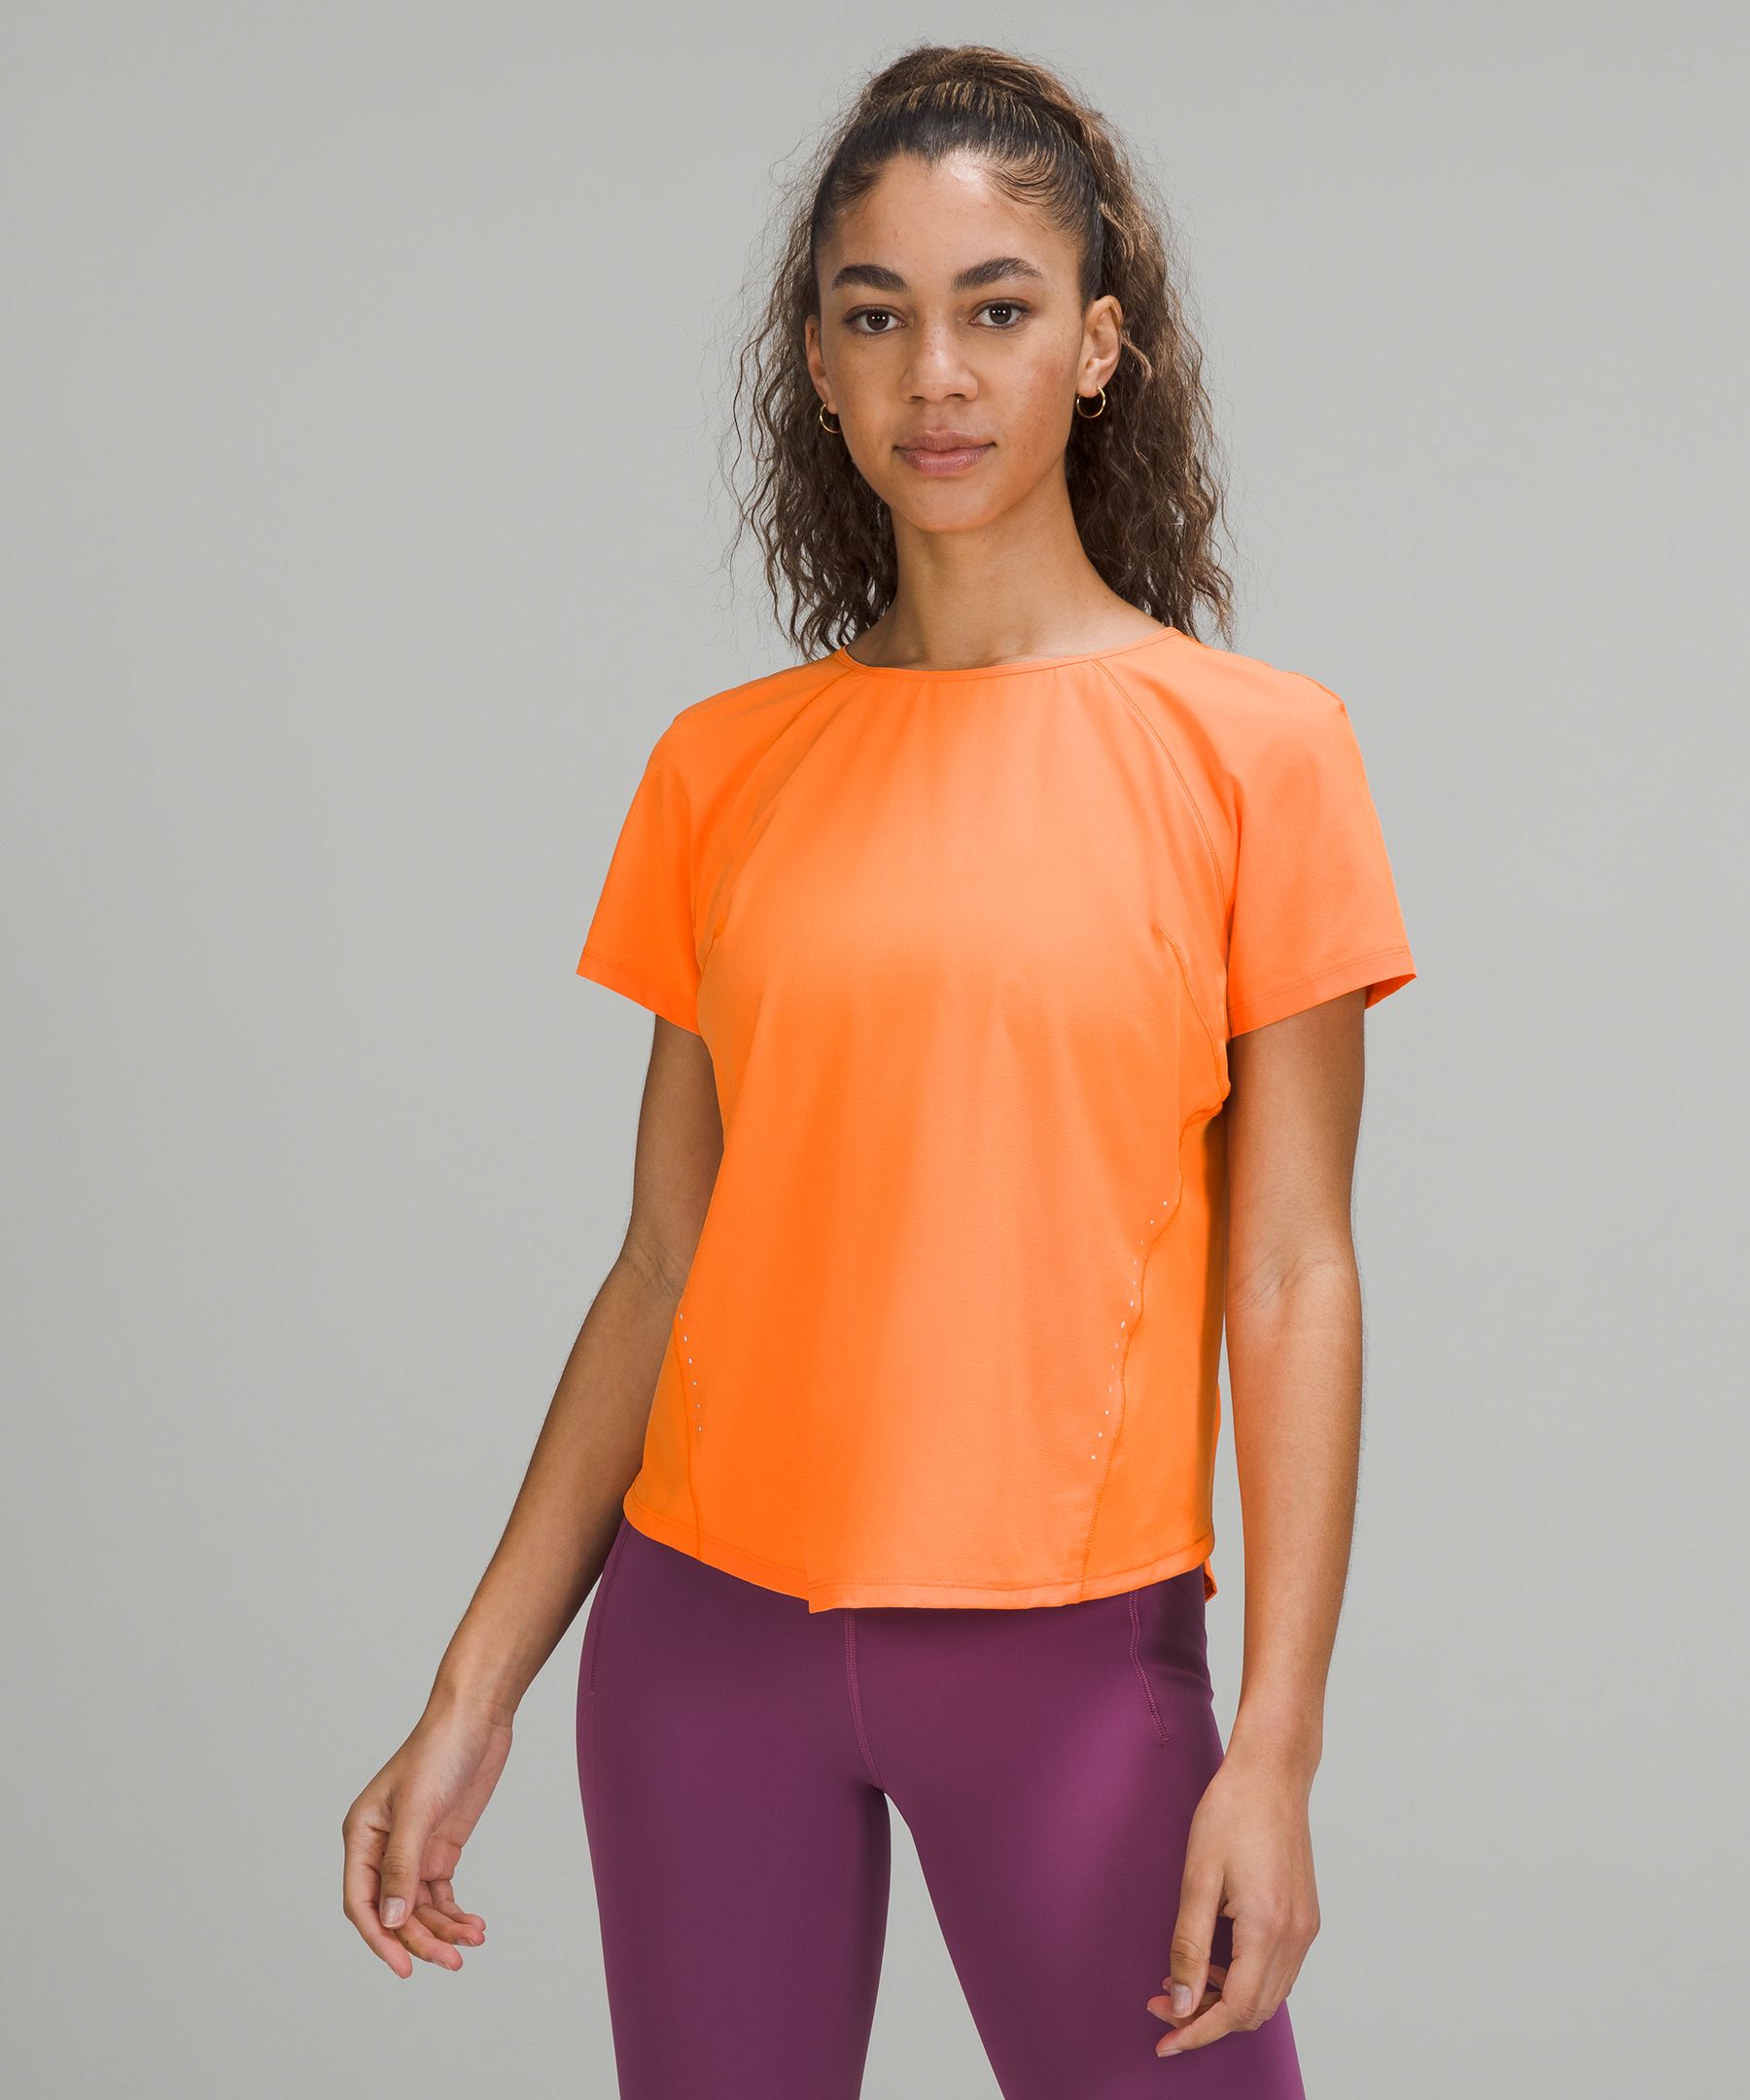 Lightweight Stretch Running Short-Sleeve Shirt, Women's Short Sleeve  Shirts & Tee's